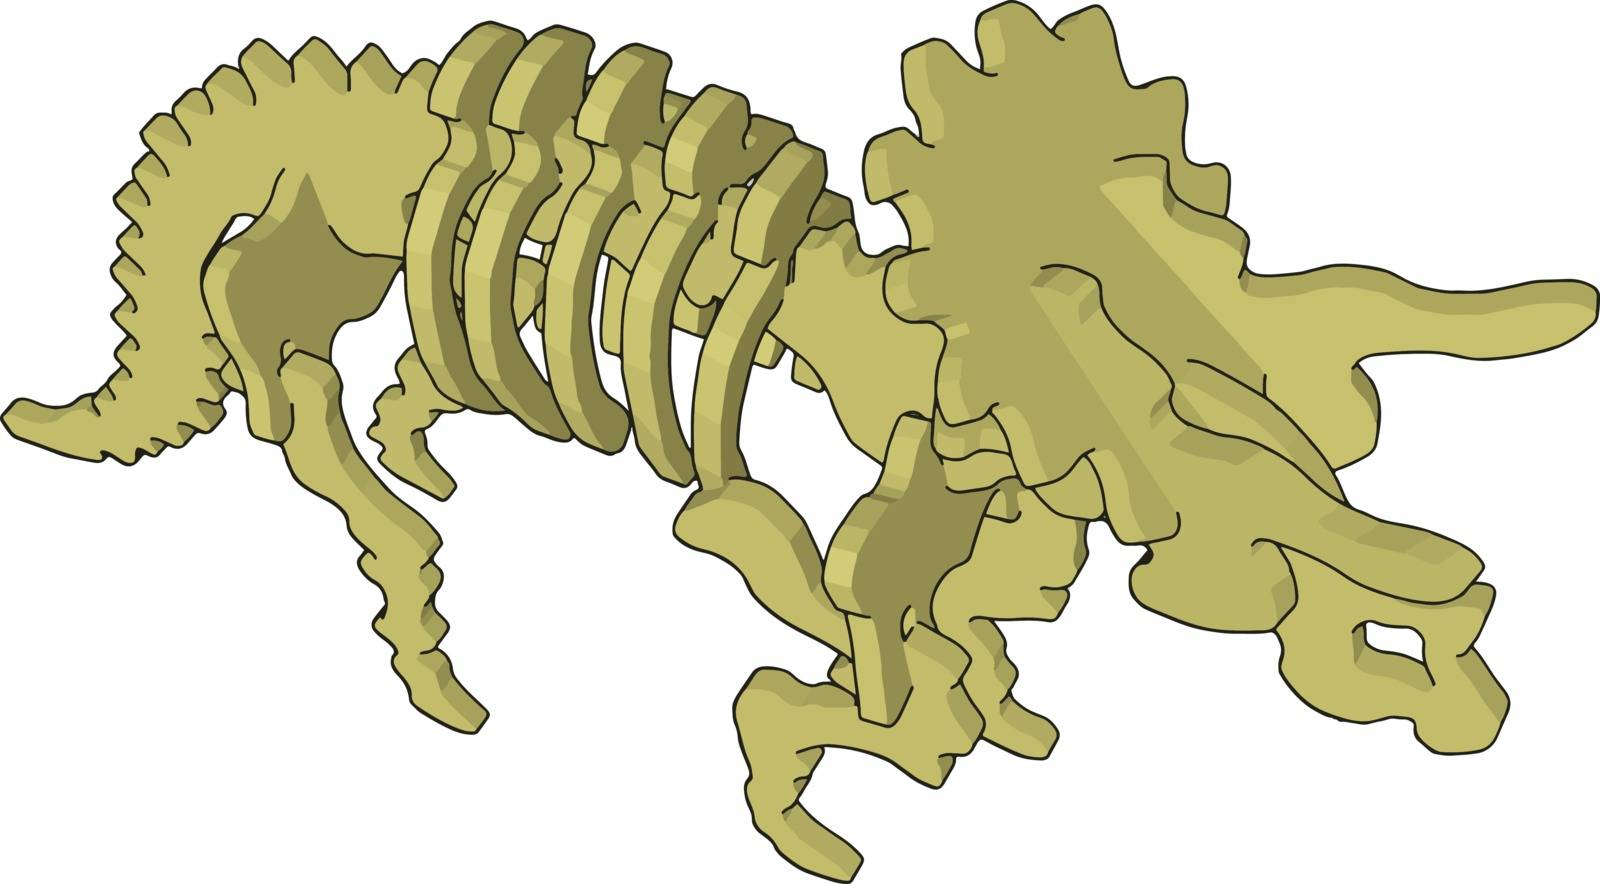 3d dinosaurus skelet, illustration, vector on white background. by Morphart